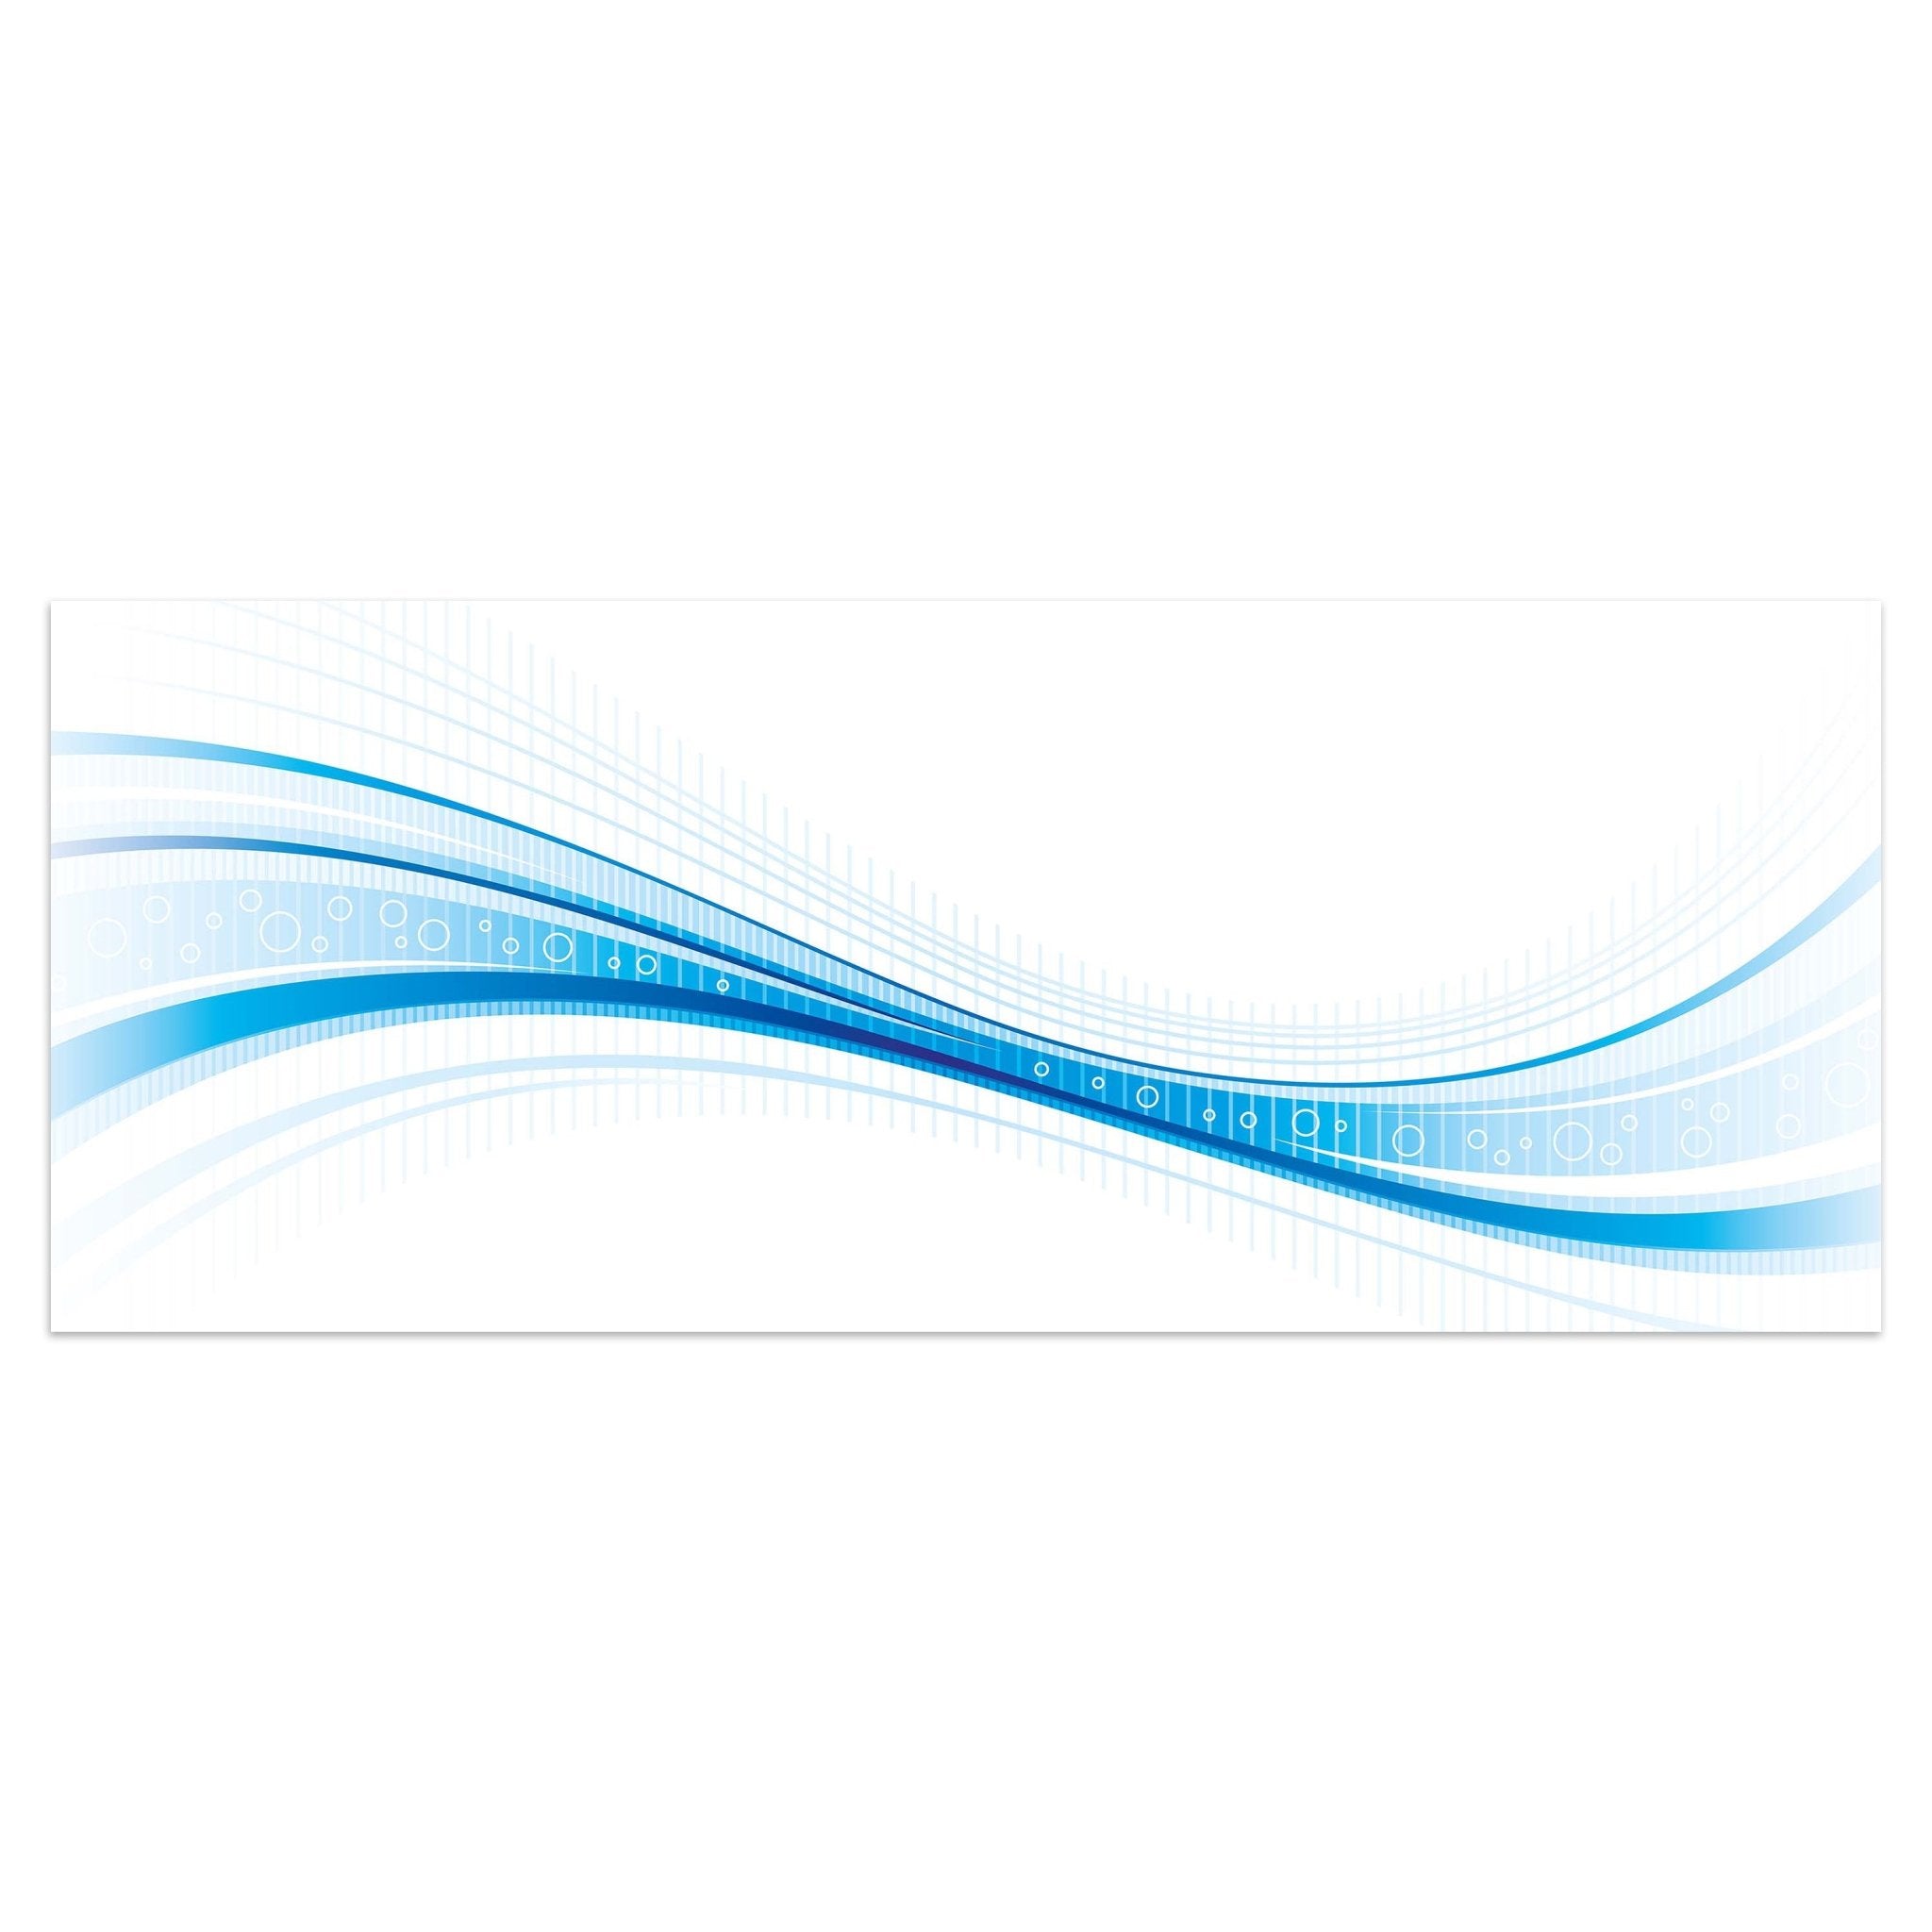 Leinwandbild Blaue Welle M0312 kaufen - Bild 1